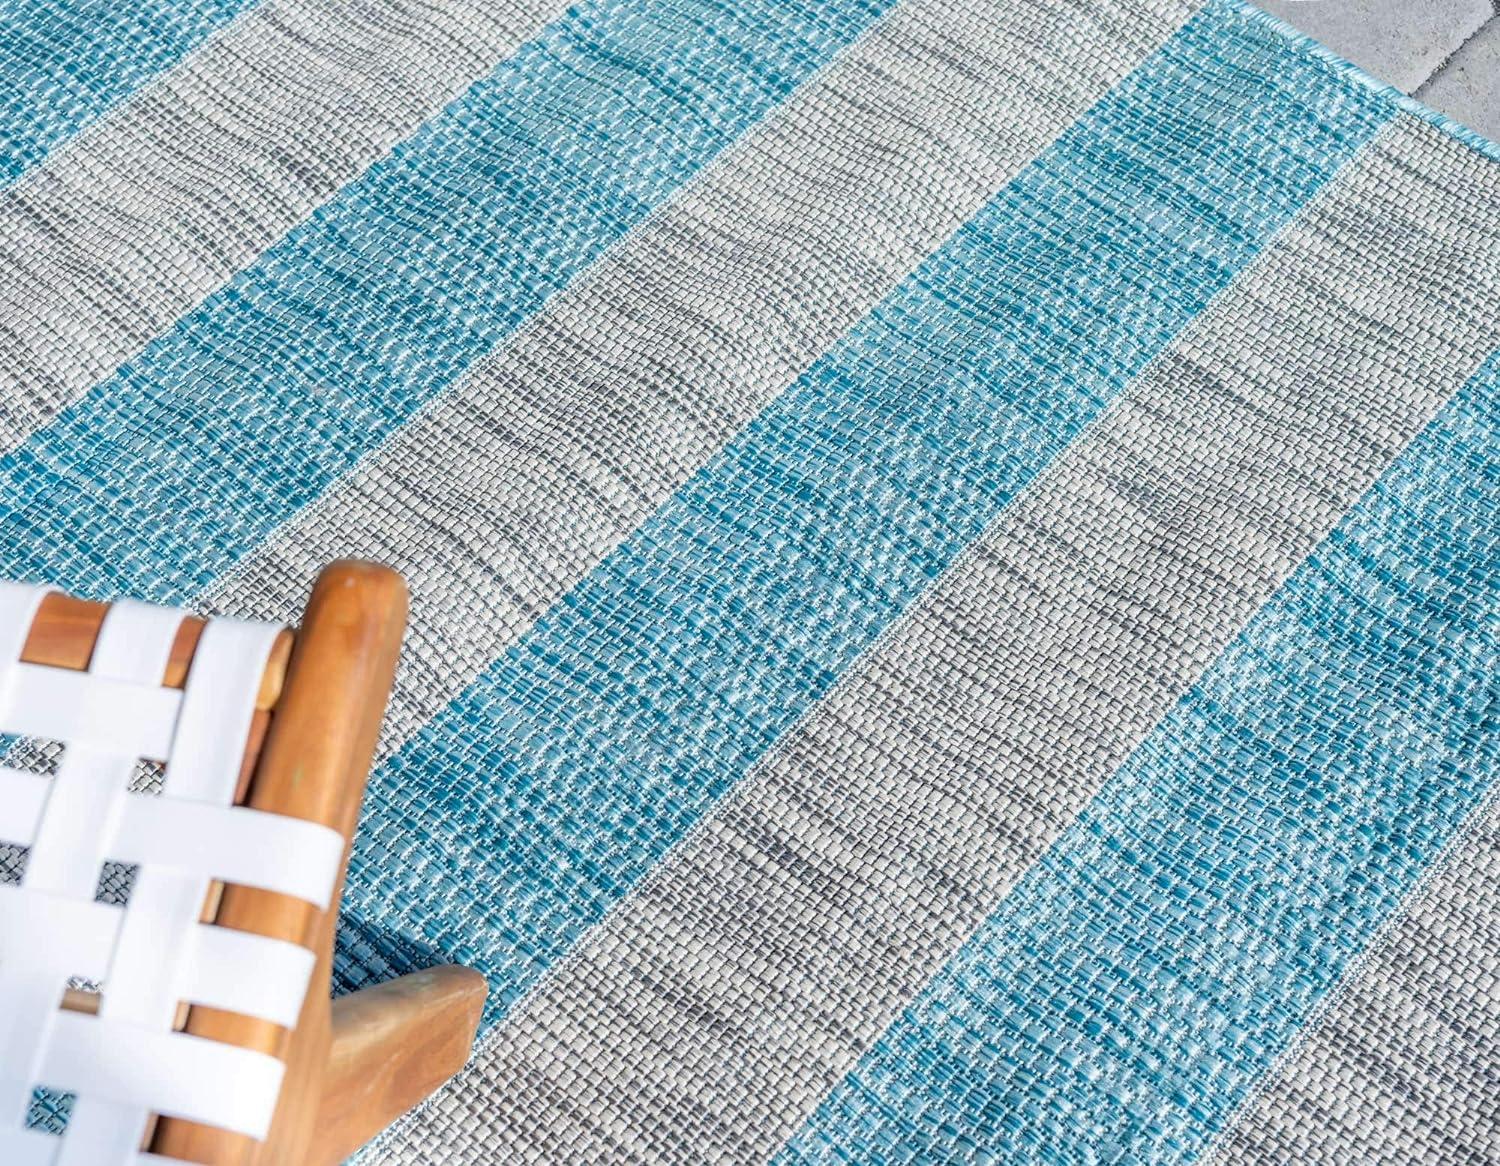 Aqua Blue and Ivory Stripe 6' x 9' Easy-Care Outdoor Rug